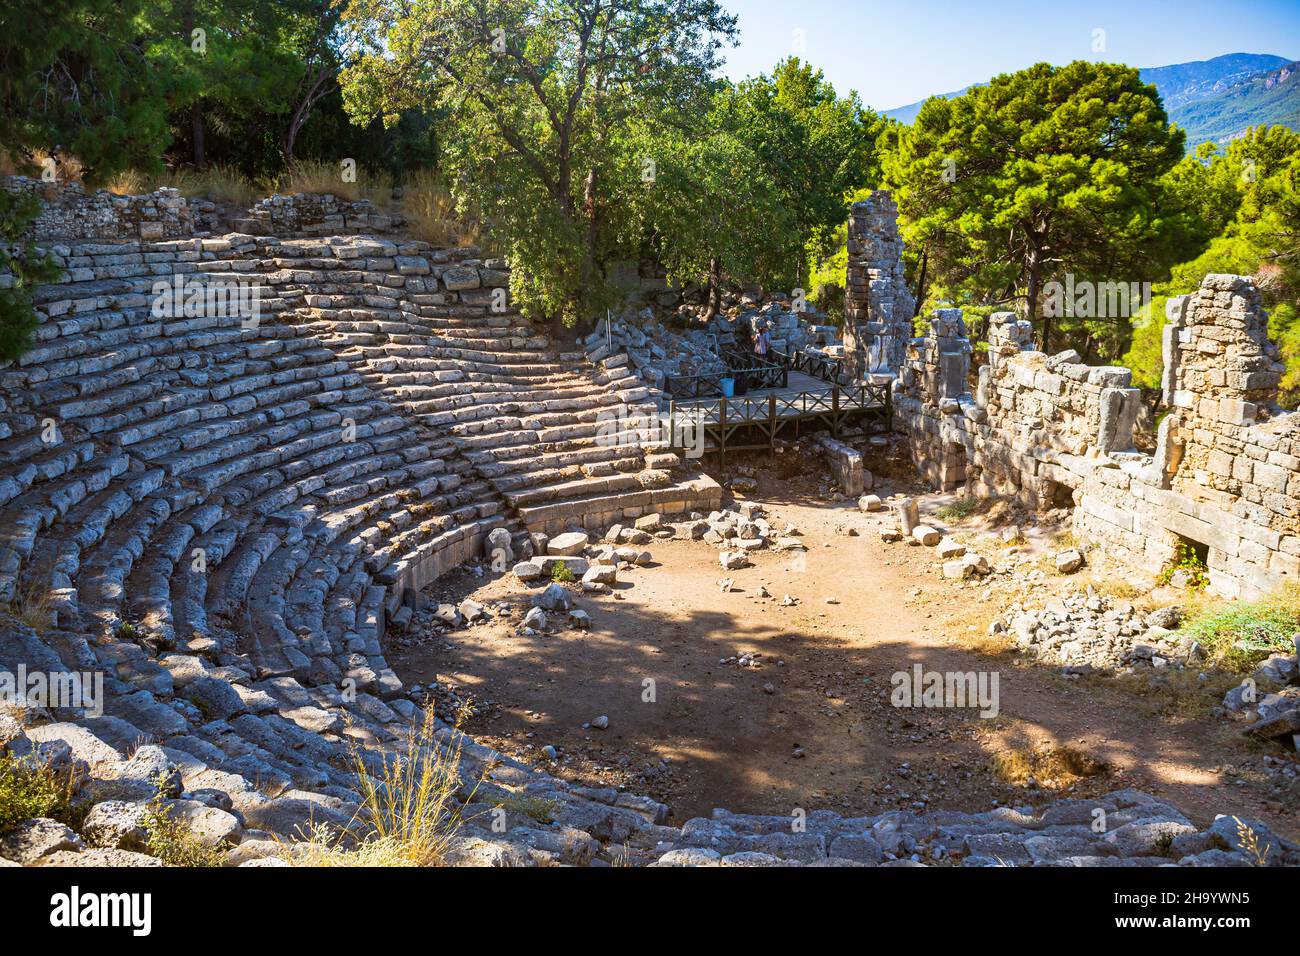 PHASELIS, TÜRKEI - CIRCA OKTOBER 2021: Phaselis, die antike Stadtruine in der Nähe von Kemer, Antalya, Türkei. Stockfoto